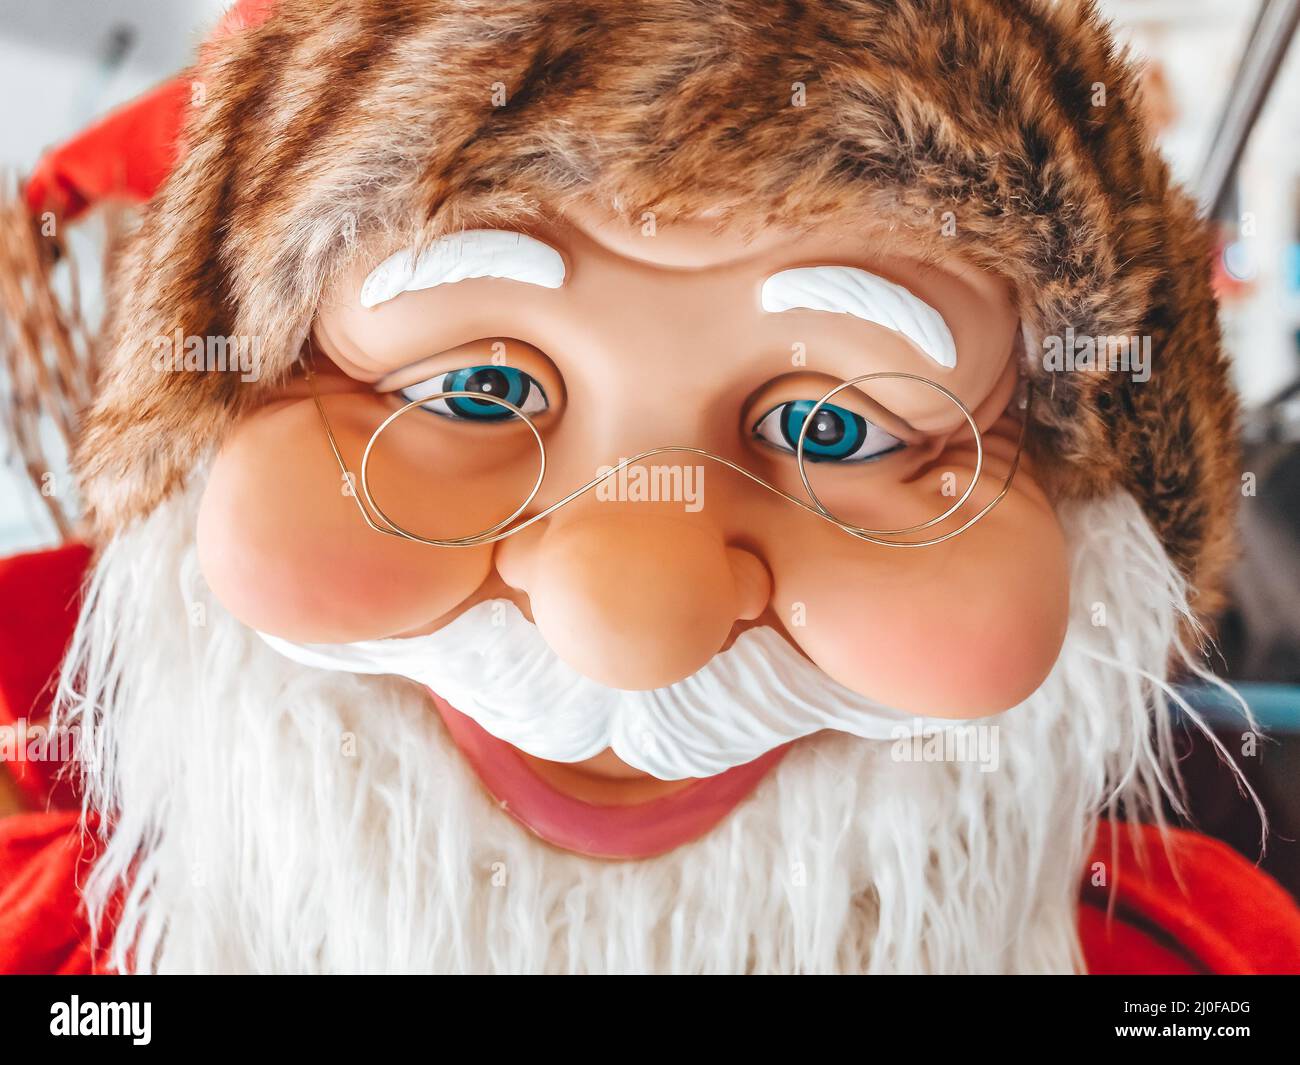 Jouet visage souriant du Père noël en caoutchouc avec des yeux bleus et des lunettes en fil métallique. Banque D'Images